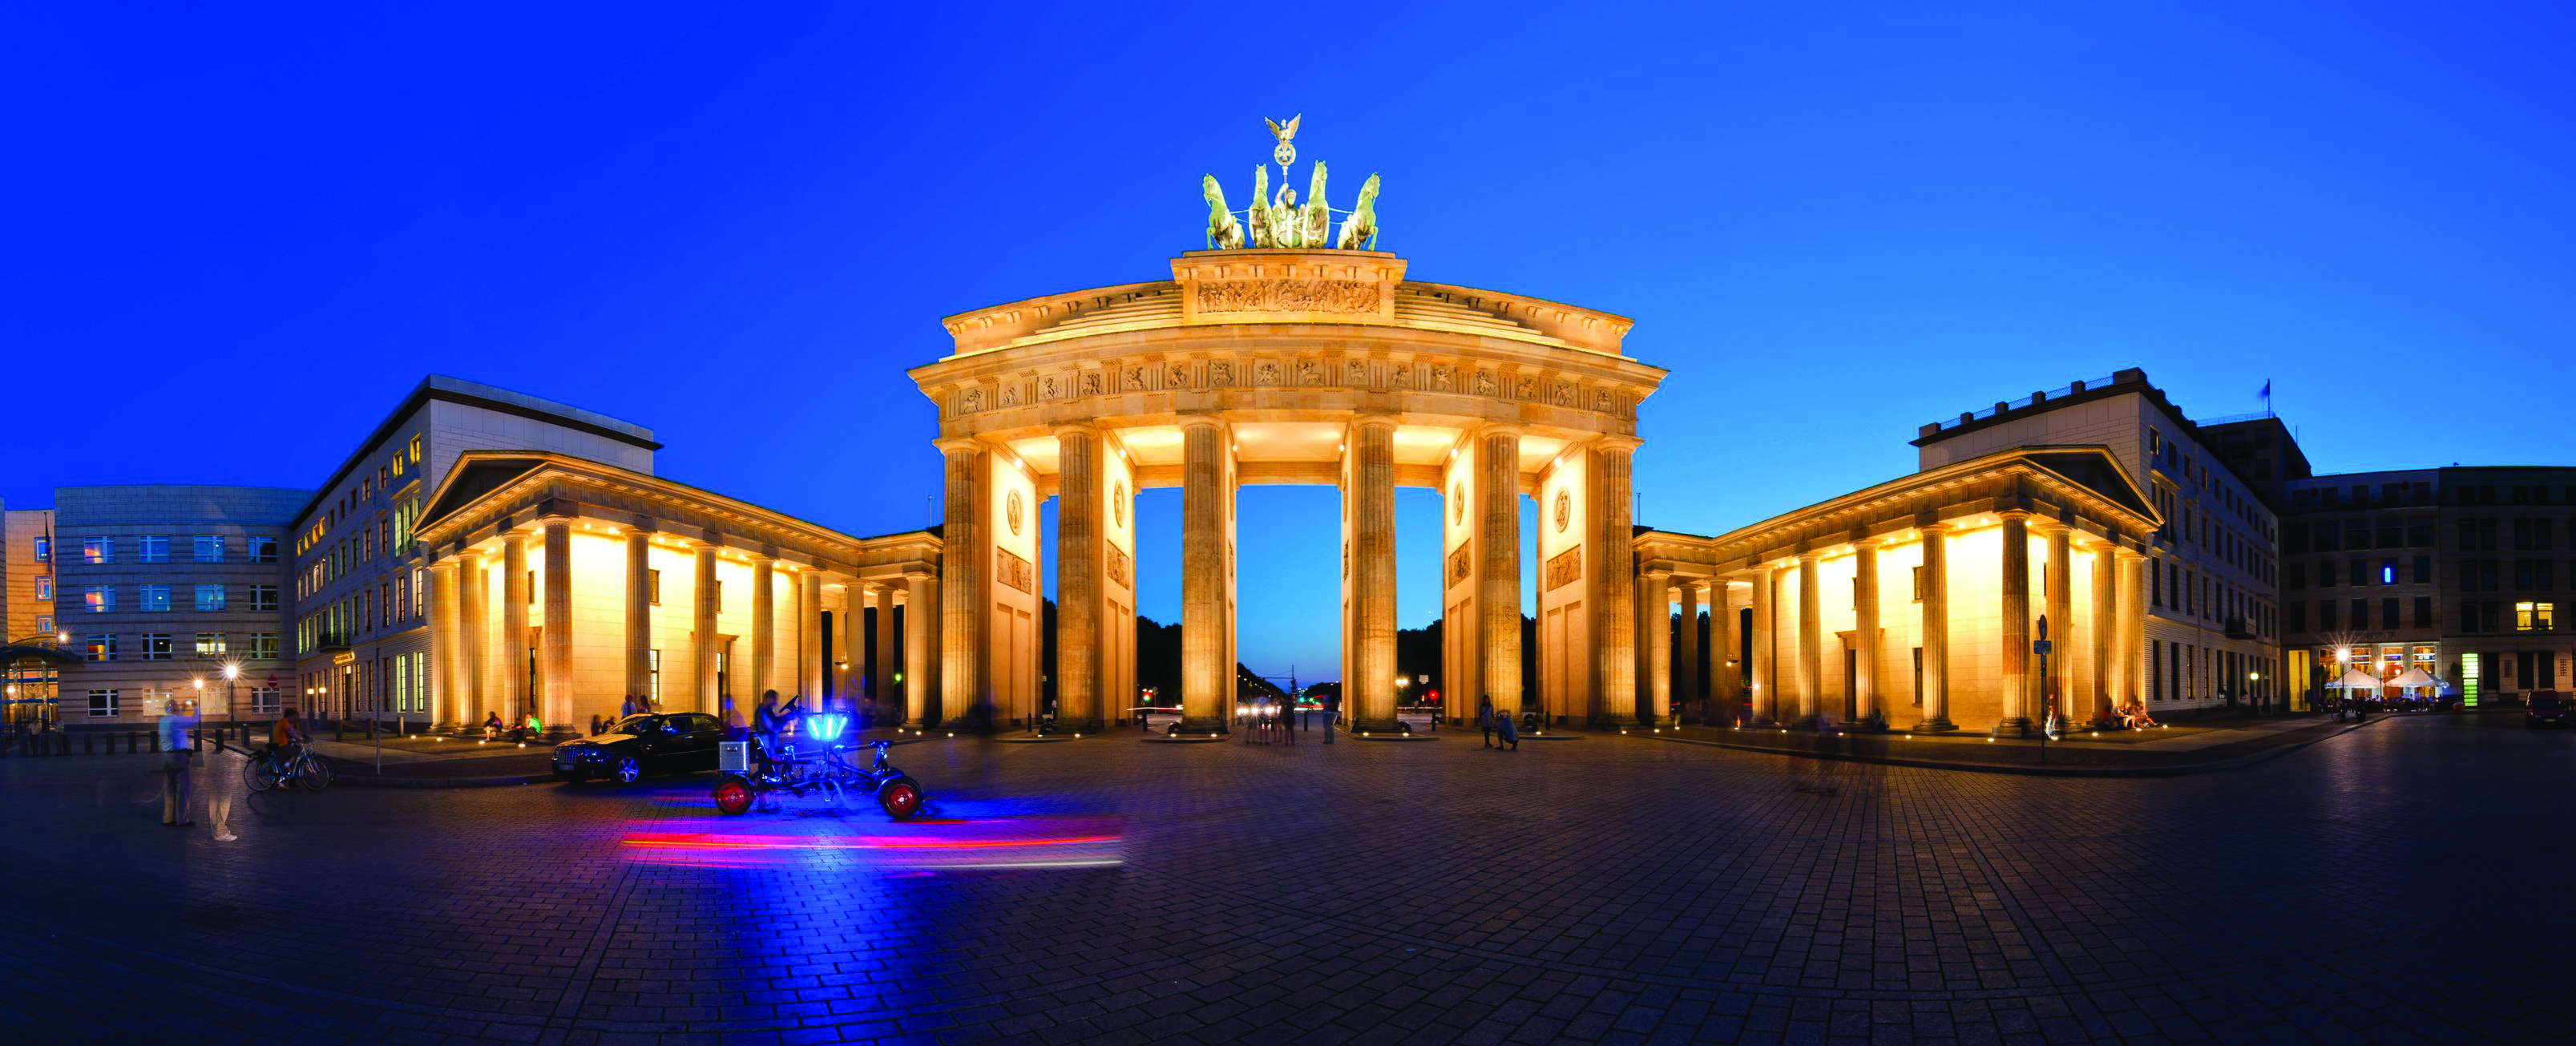 Berlin'de gezip görülecek yerler